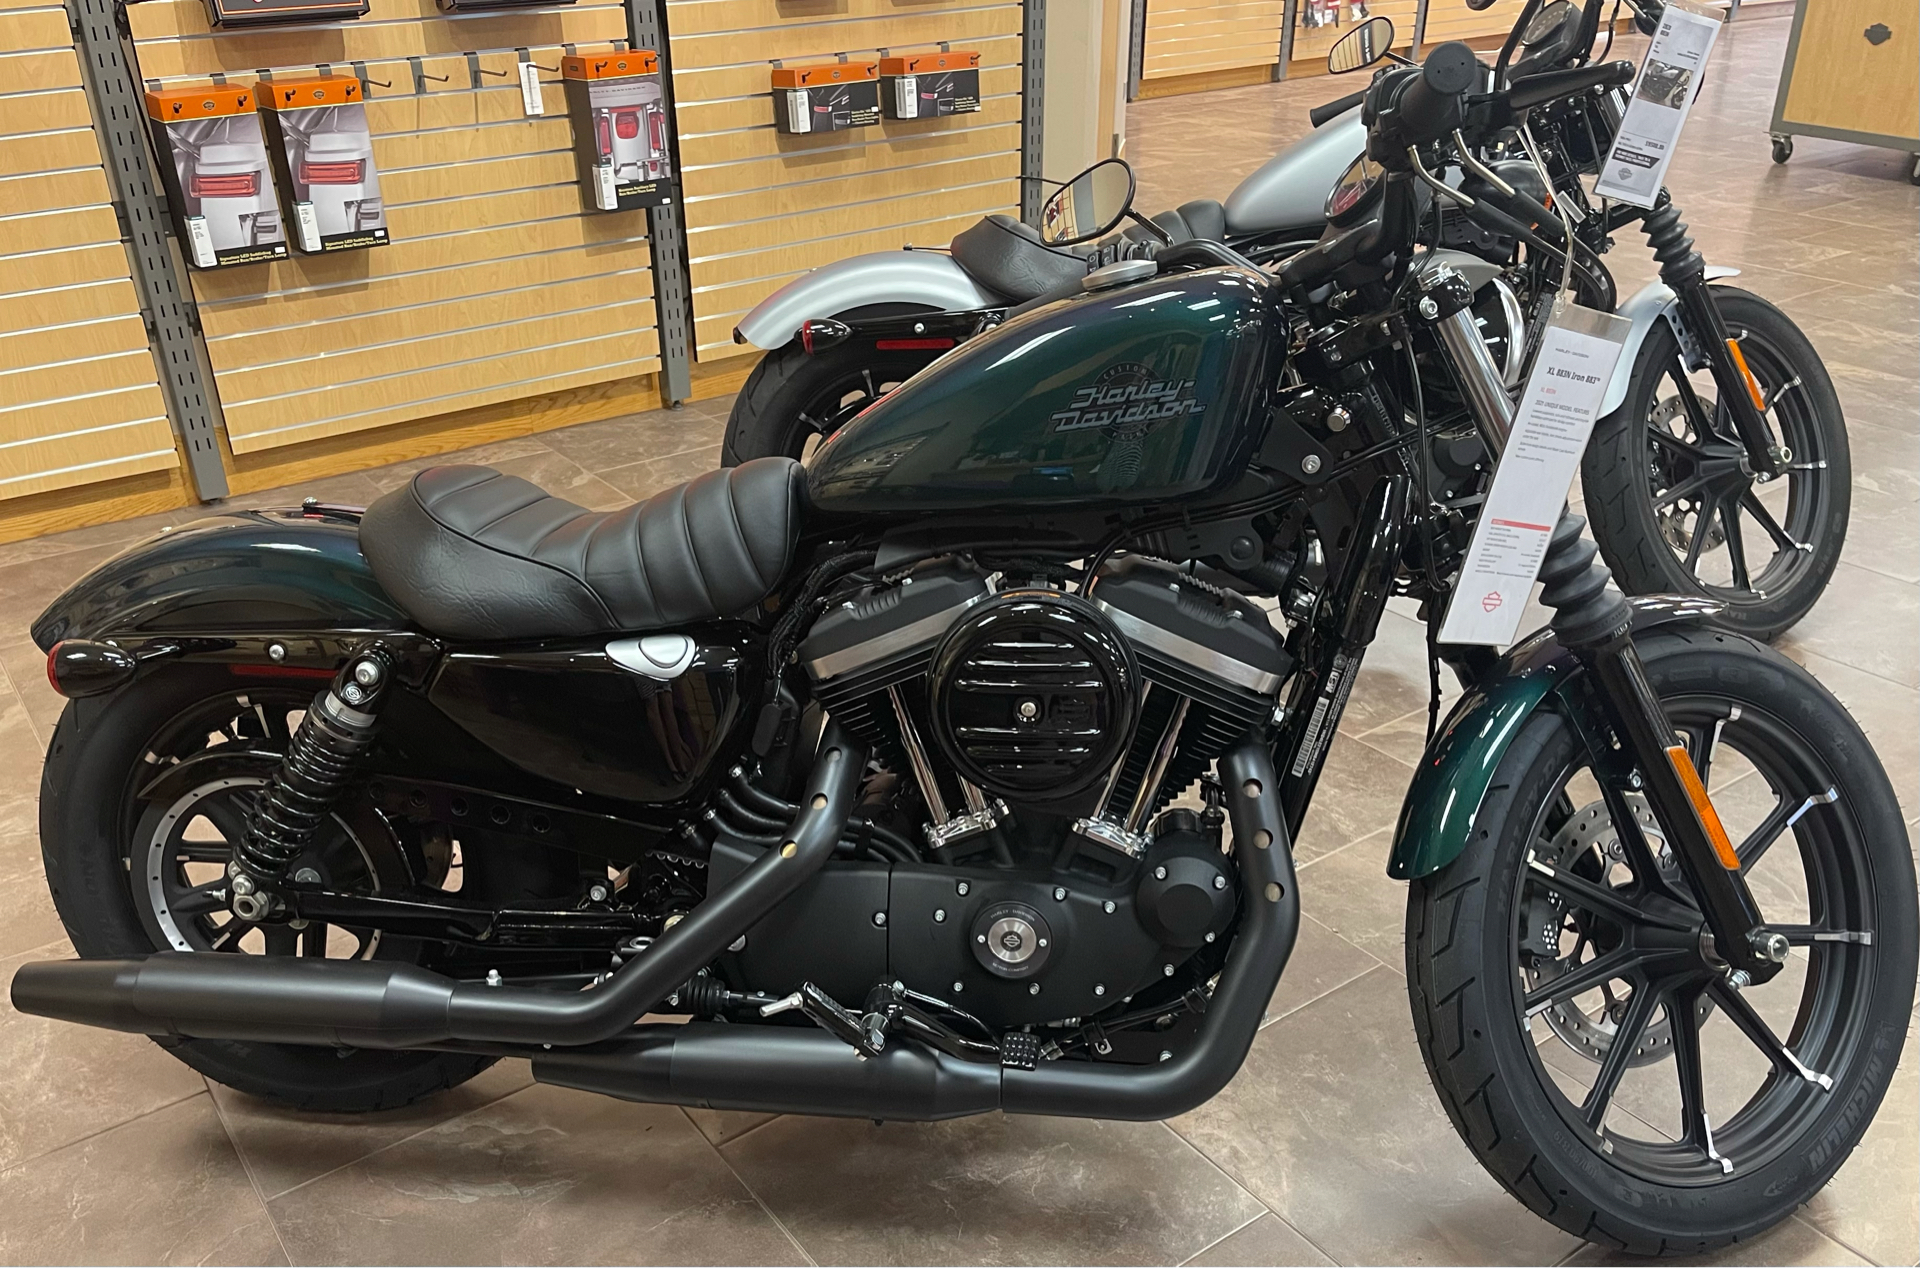 New 2021 Harley Davidson Iron 883 Motorcycles In Fort Ann Ny 412743 Snake Venom